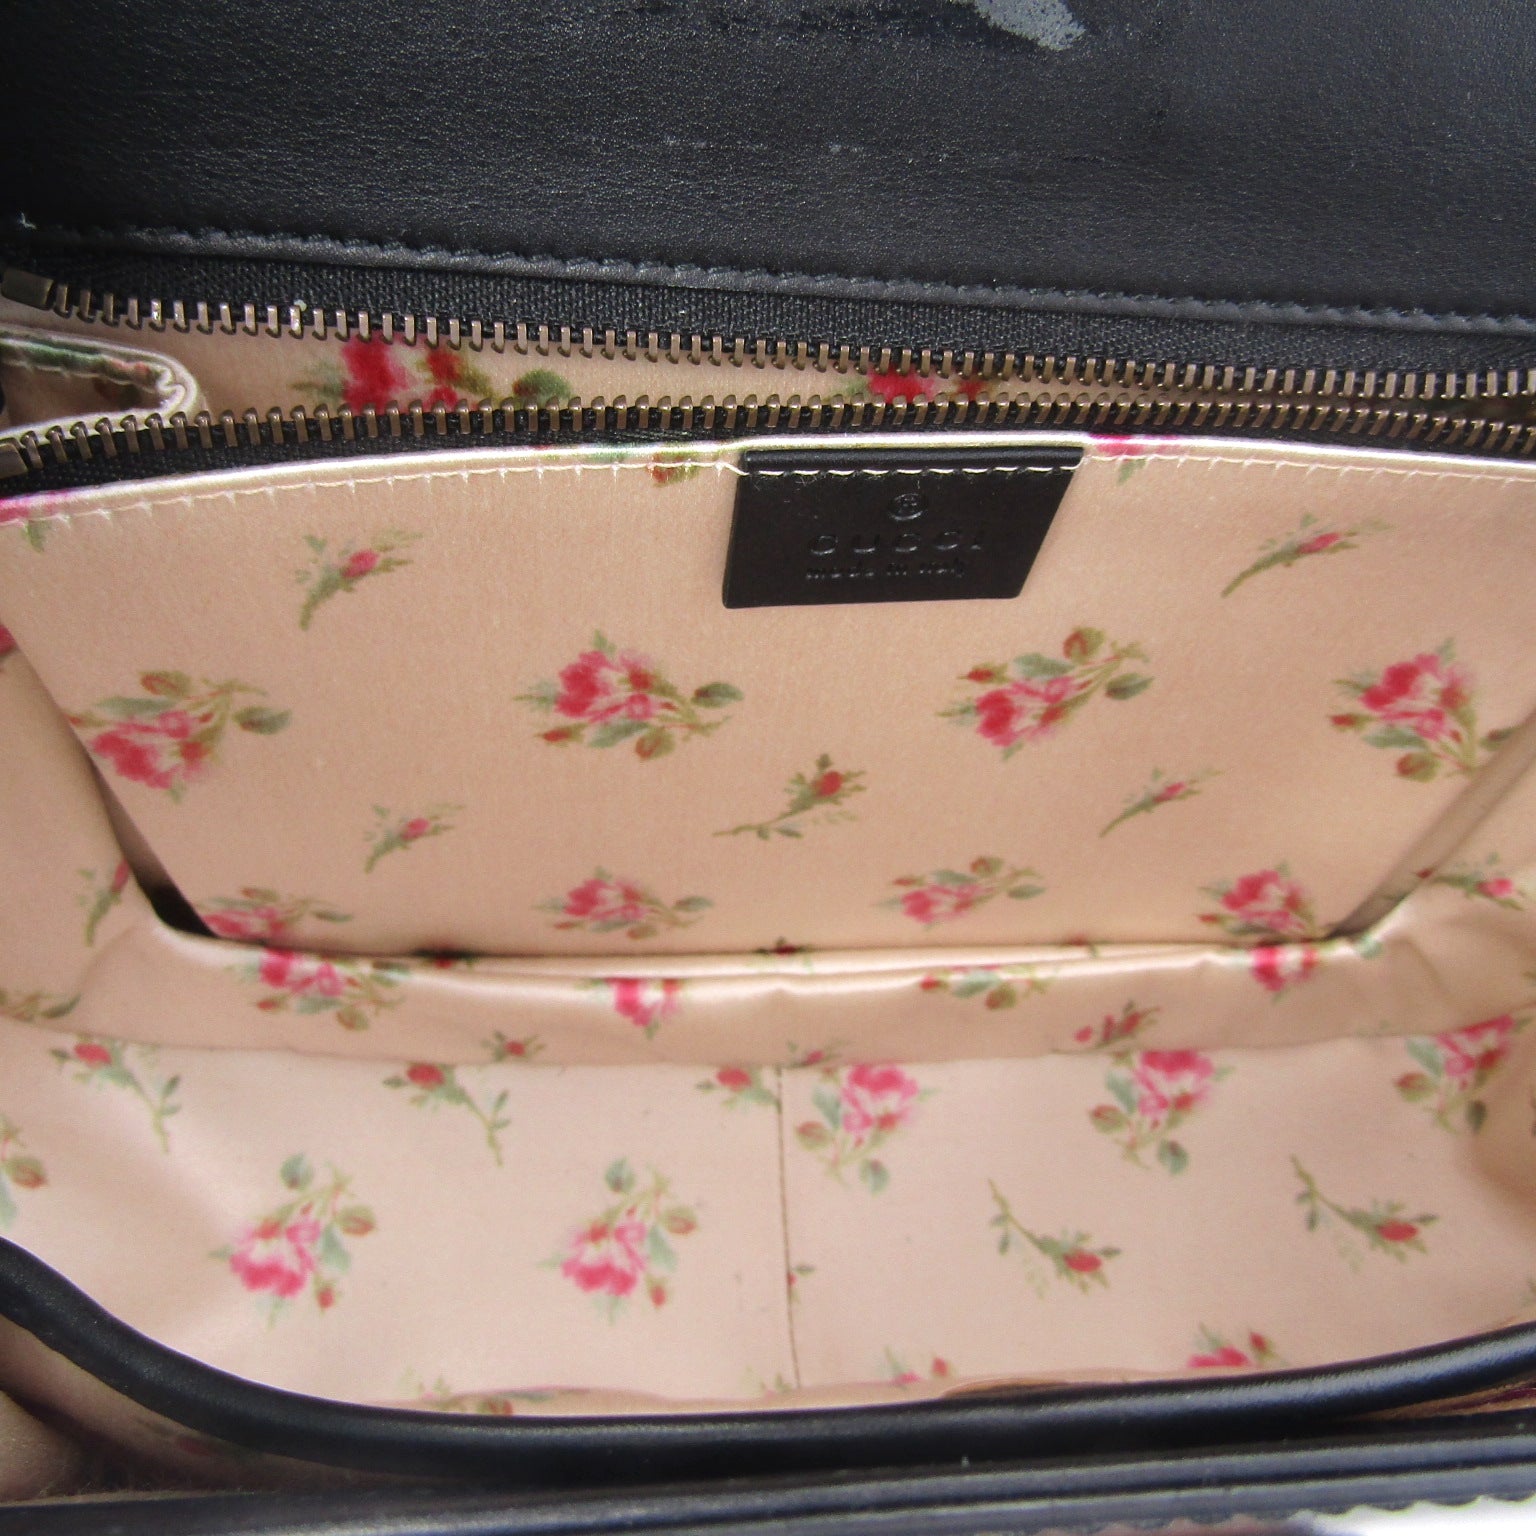 Bamboo calfskin handbag Gucci Black in Pony-style calfskin - 35398986